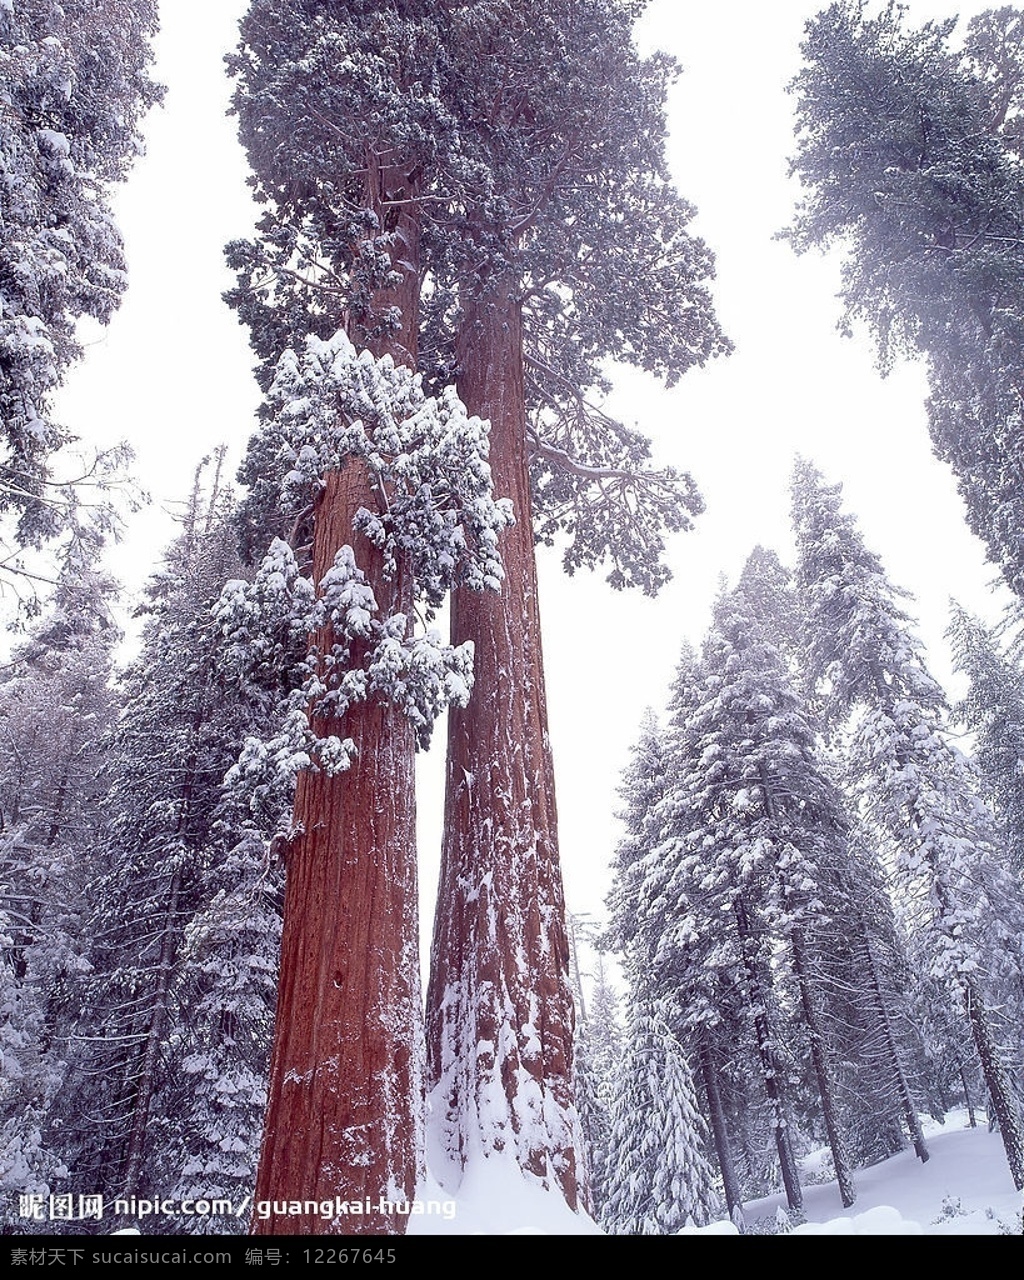 冬天雪景 风景 雪 树 森林 天空 自然景观 自然风景 摄影图库